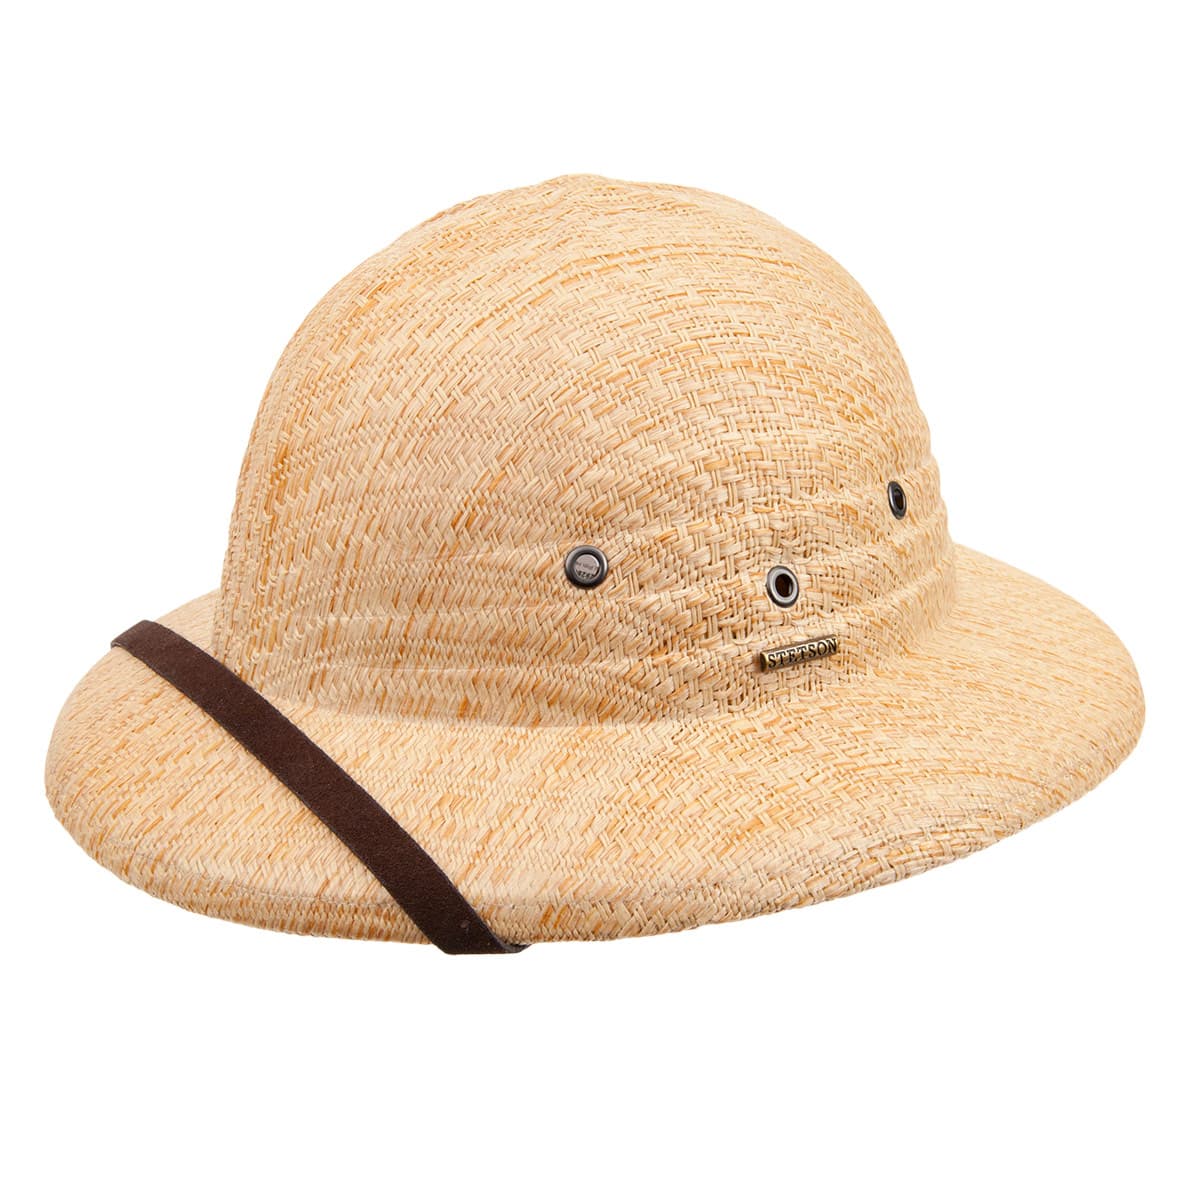 16604円 堅実な究極の Men 's Palm Braid Safari Hat US サイズ: XL カラー: ベージュ